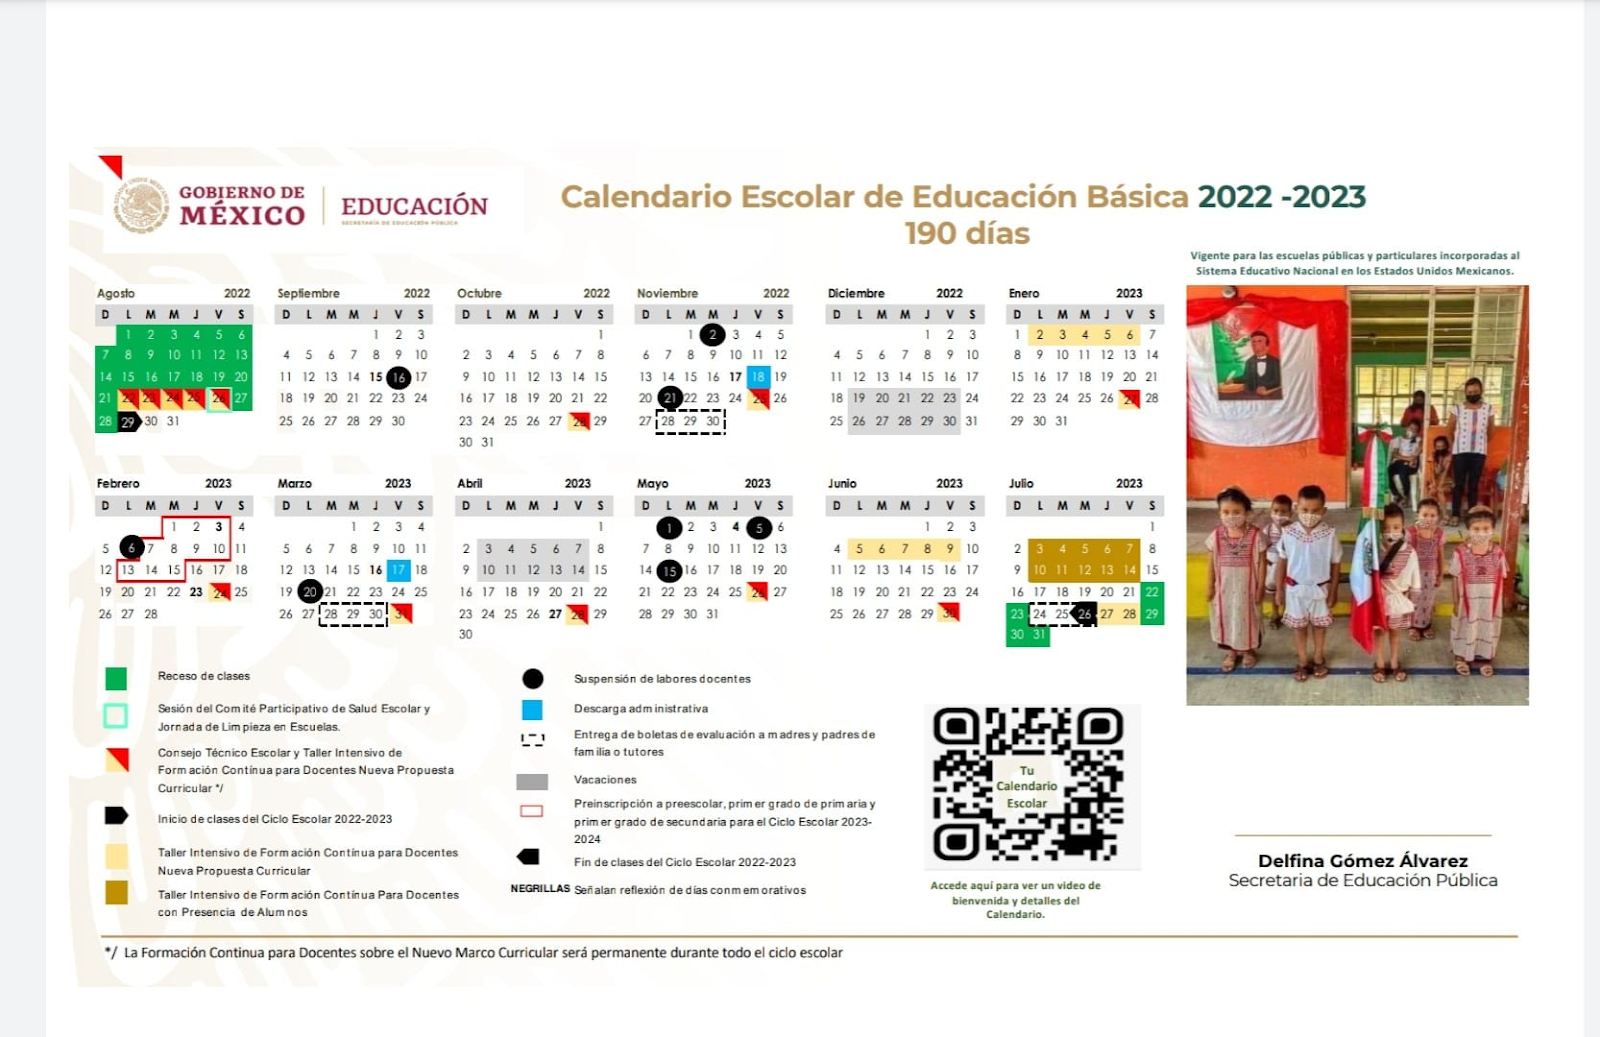 Calendario escolar 2022 - 2023 de 190 días